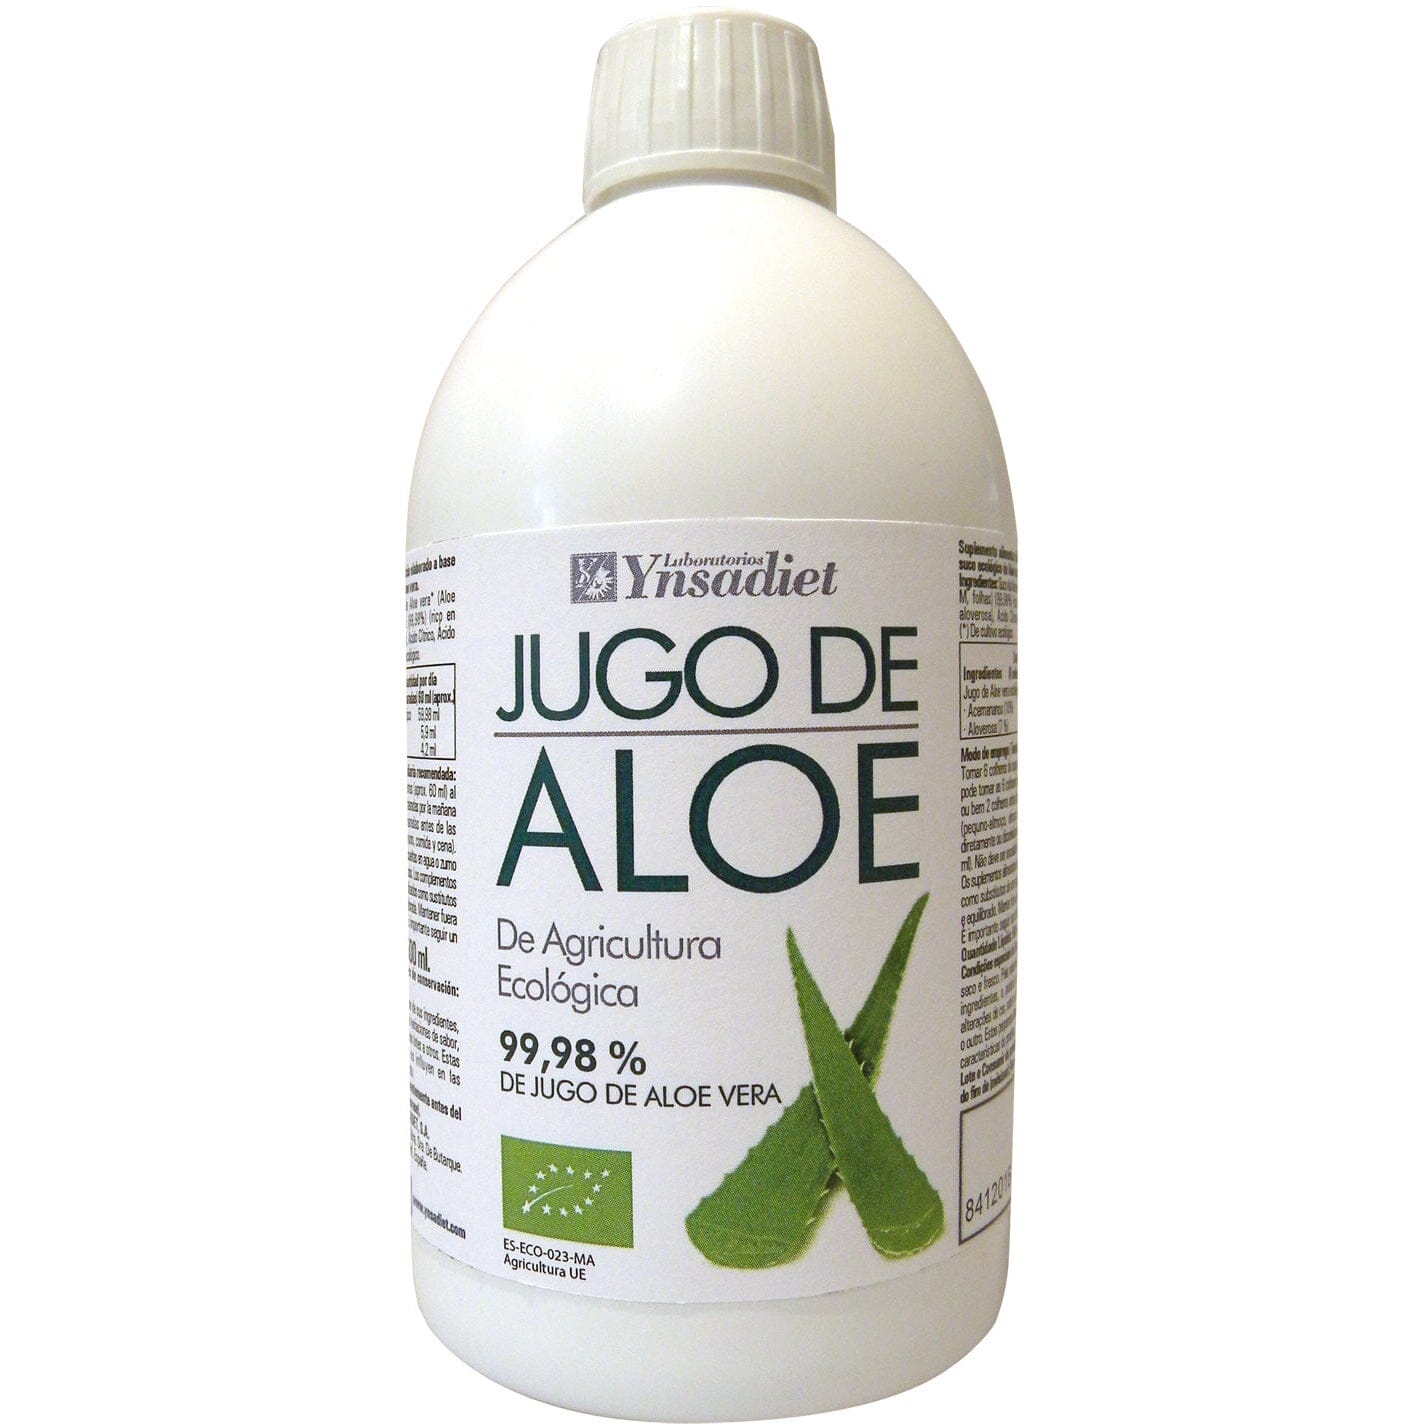 Jugo de Aloe Vera Bio 500 ml | Ynsadiet - Dietetica Ferrer